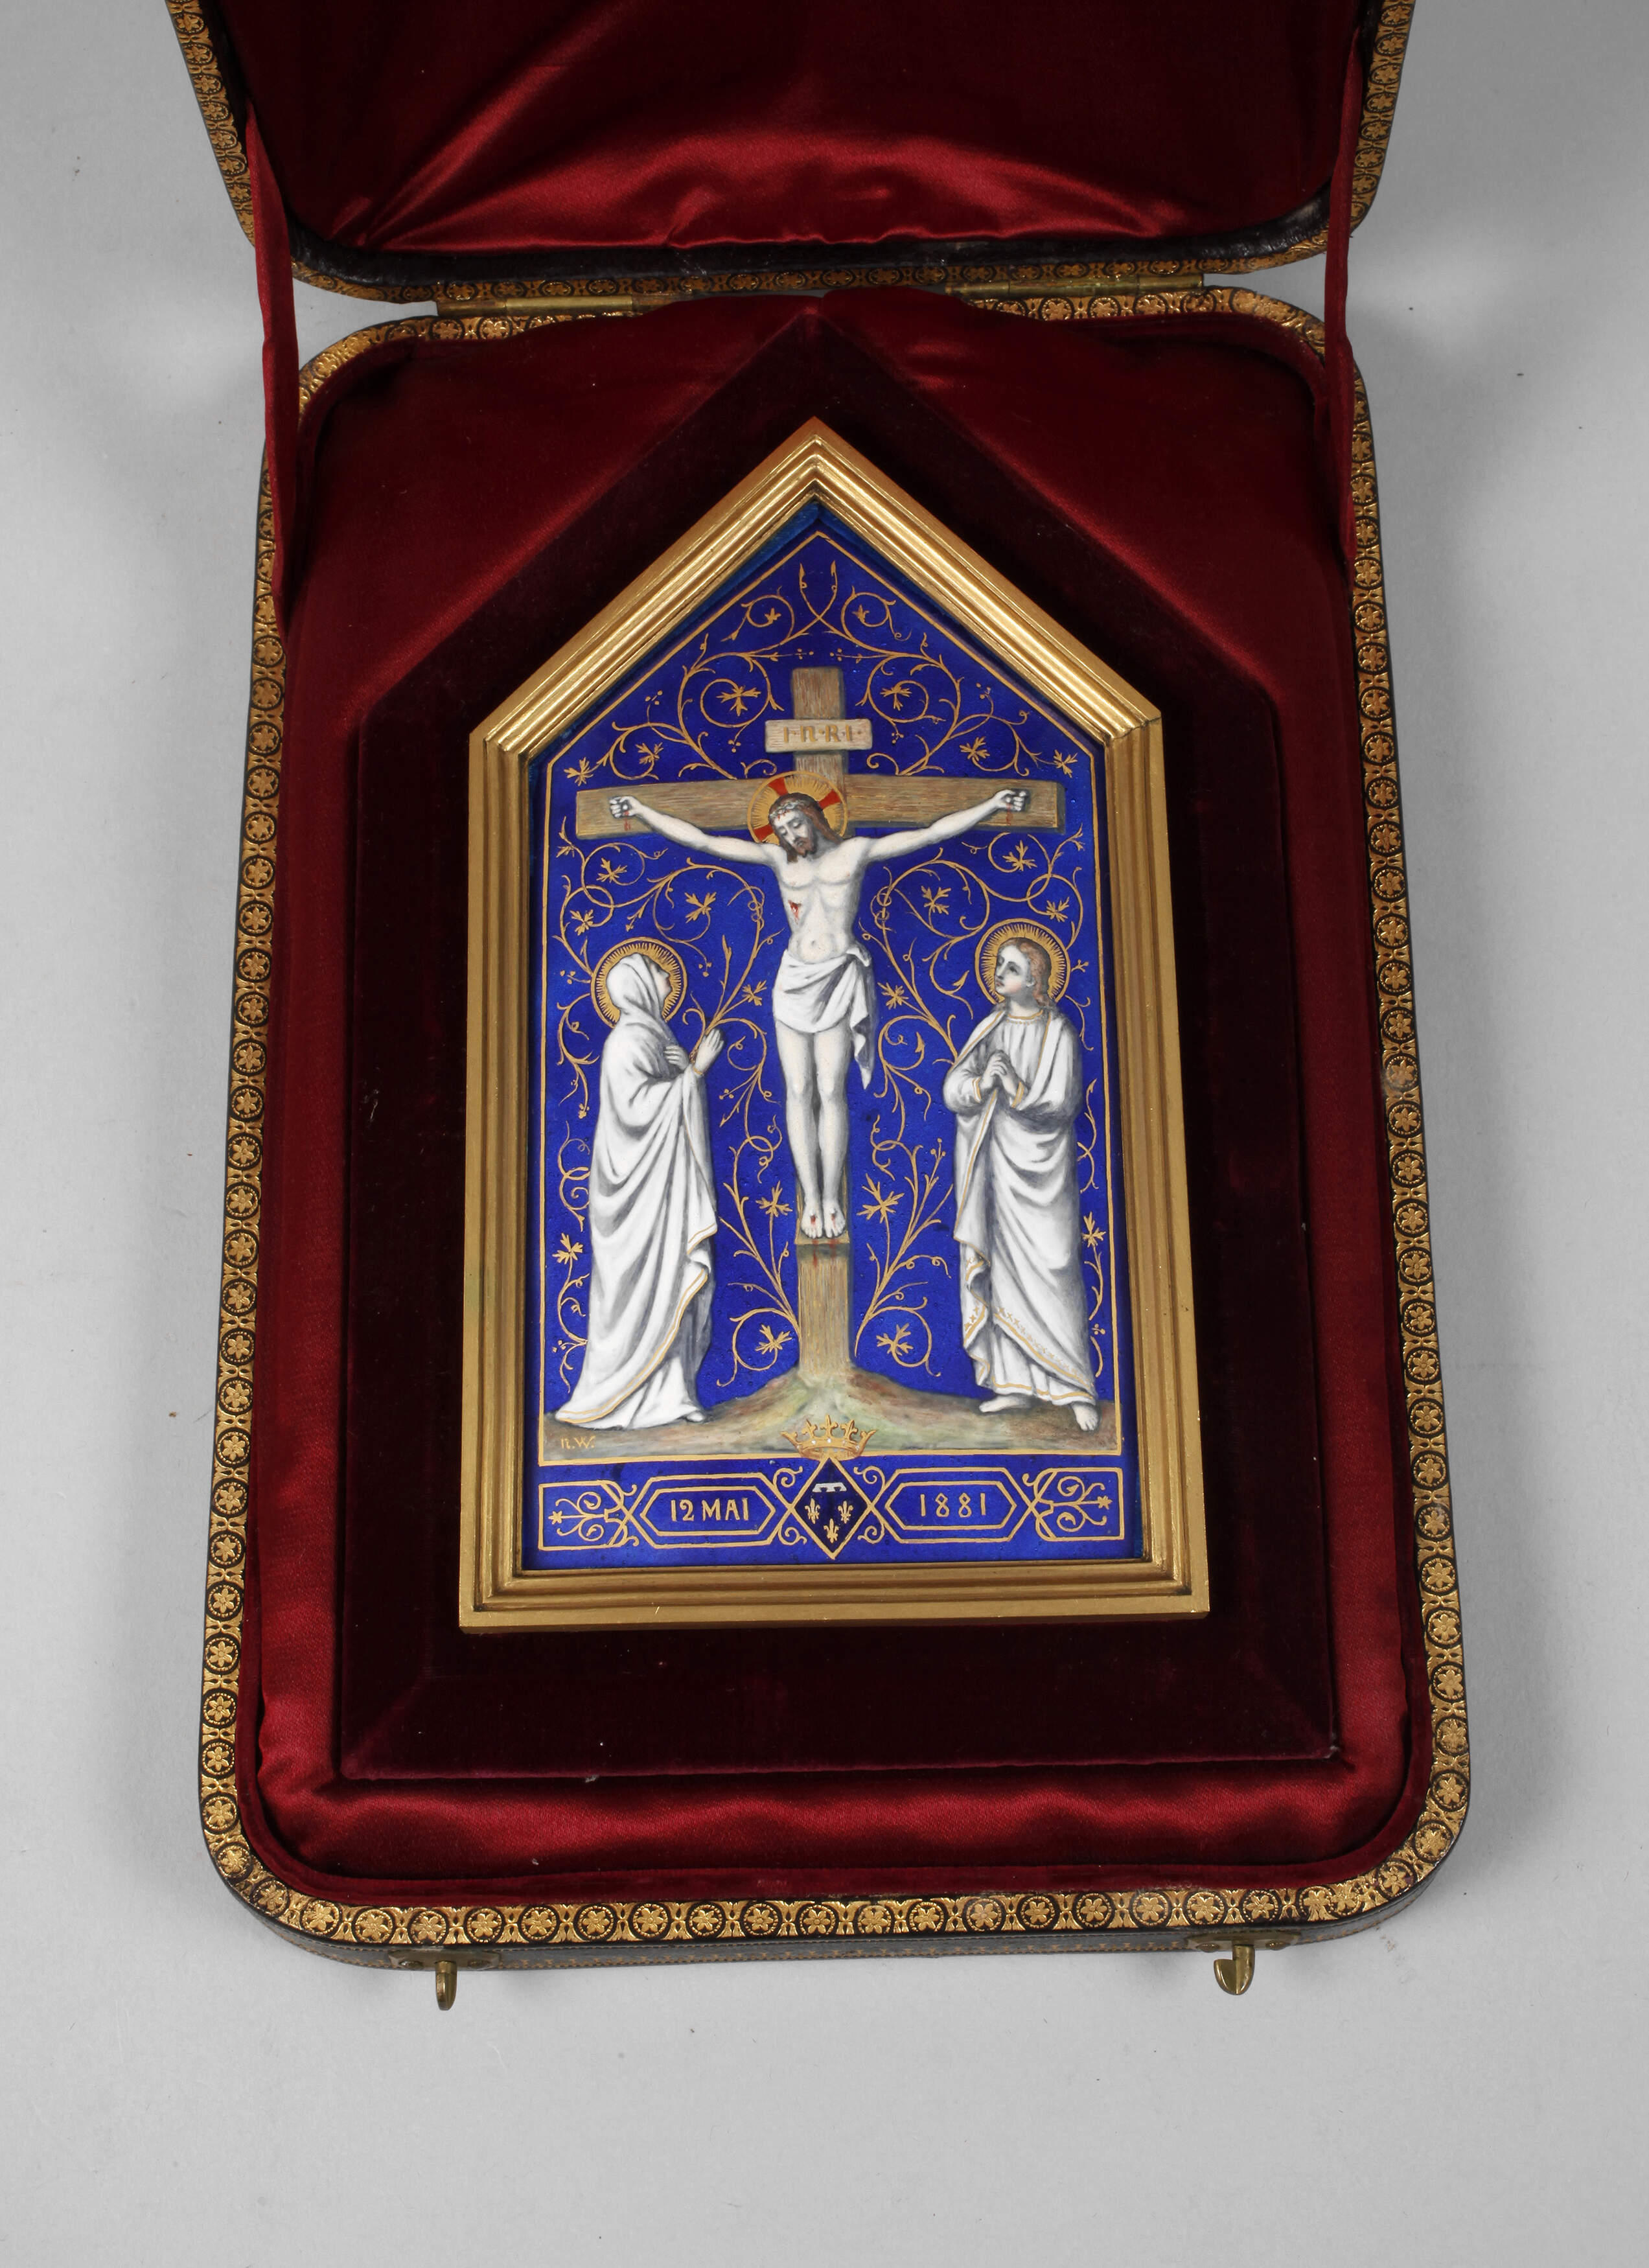 Religiöses Geschenk aus dem Haus Louis d’Orléans